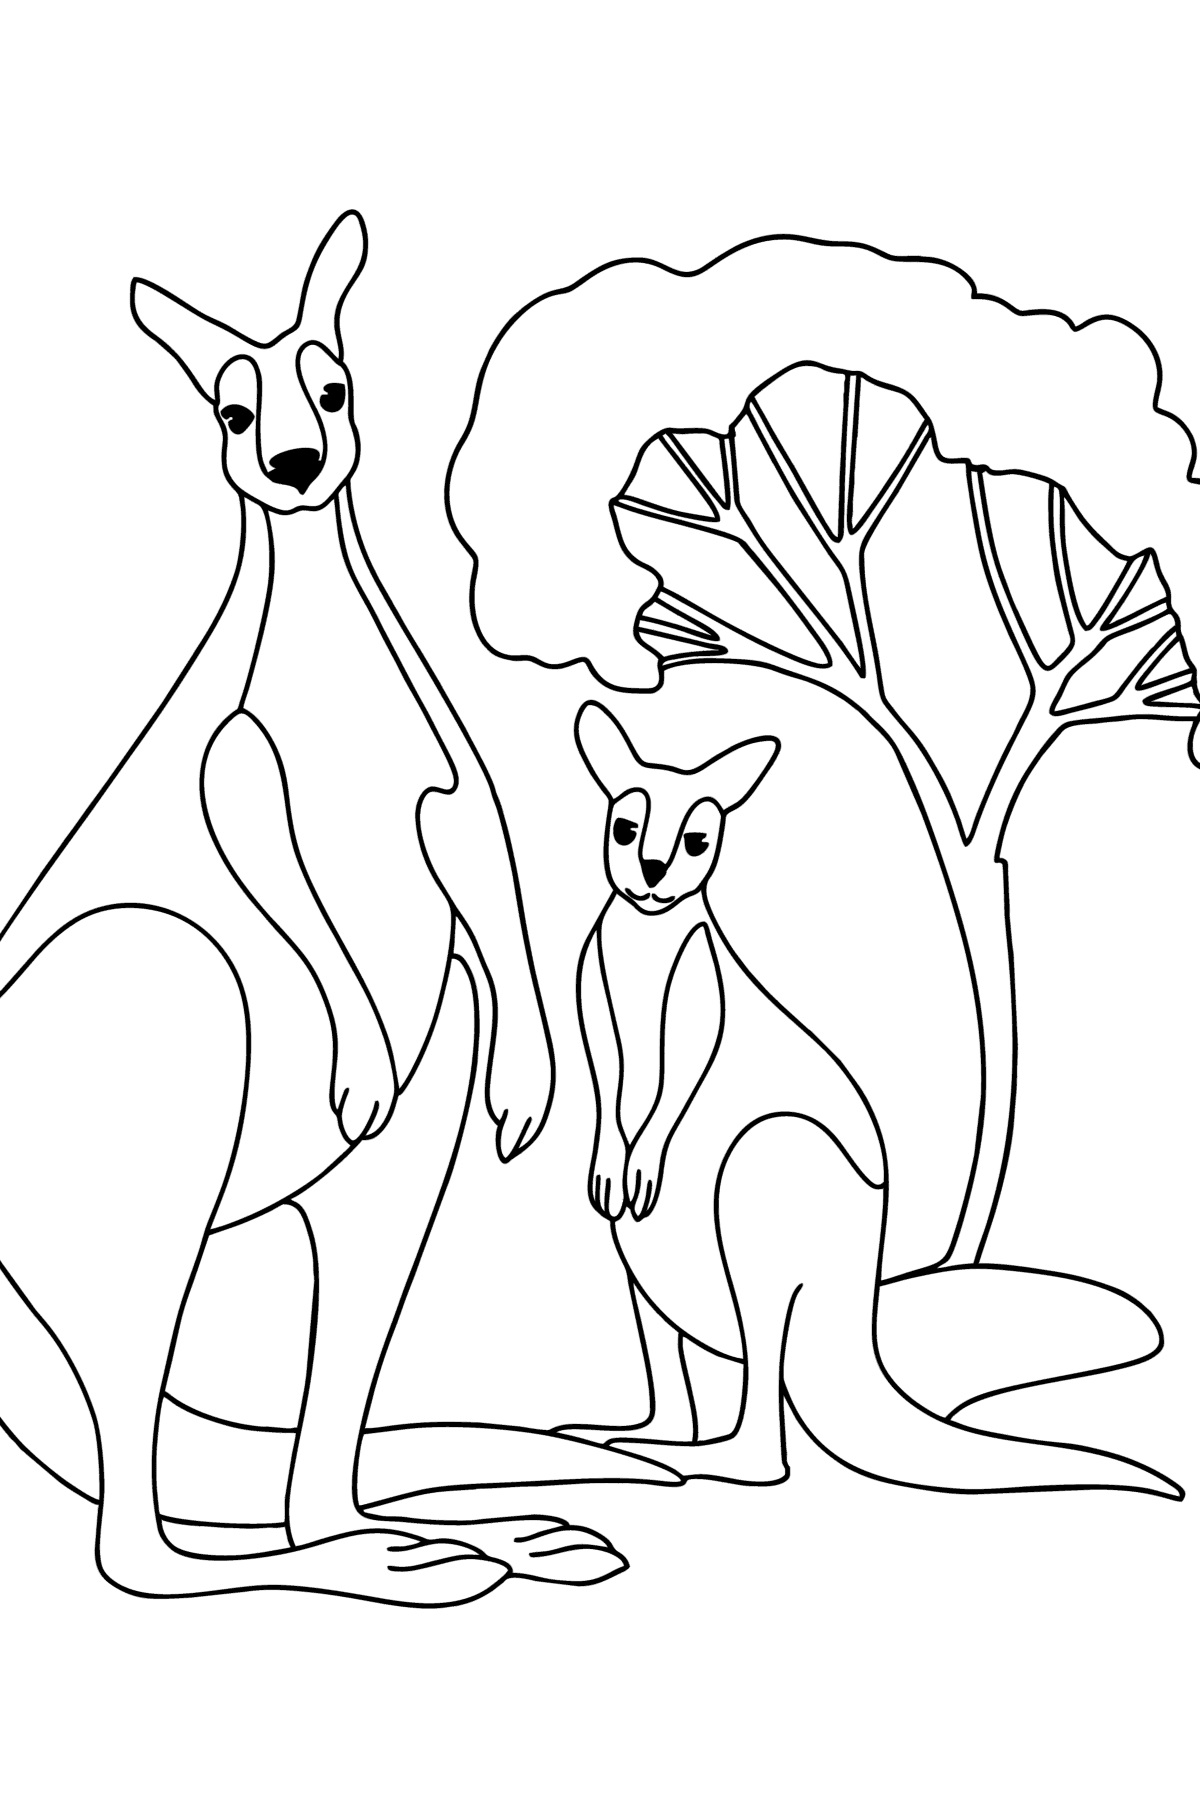 Kleurplaat kangoeroe met baby - kleurplaten voor kinderen